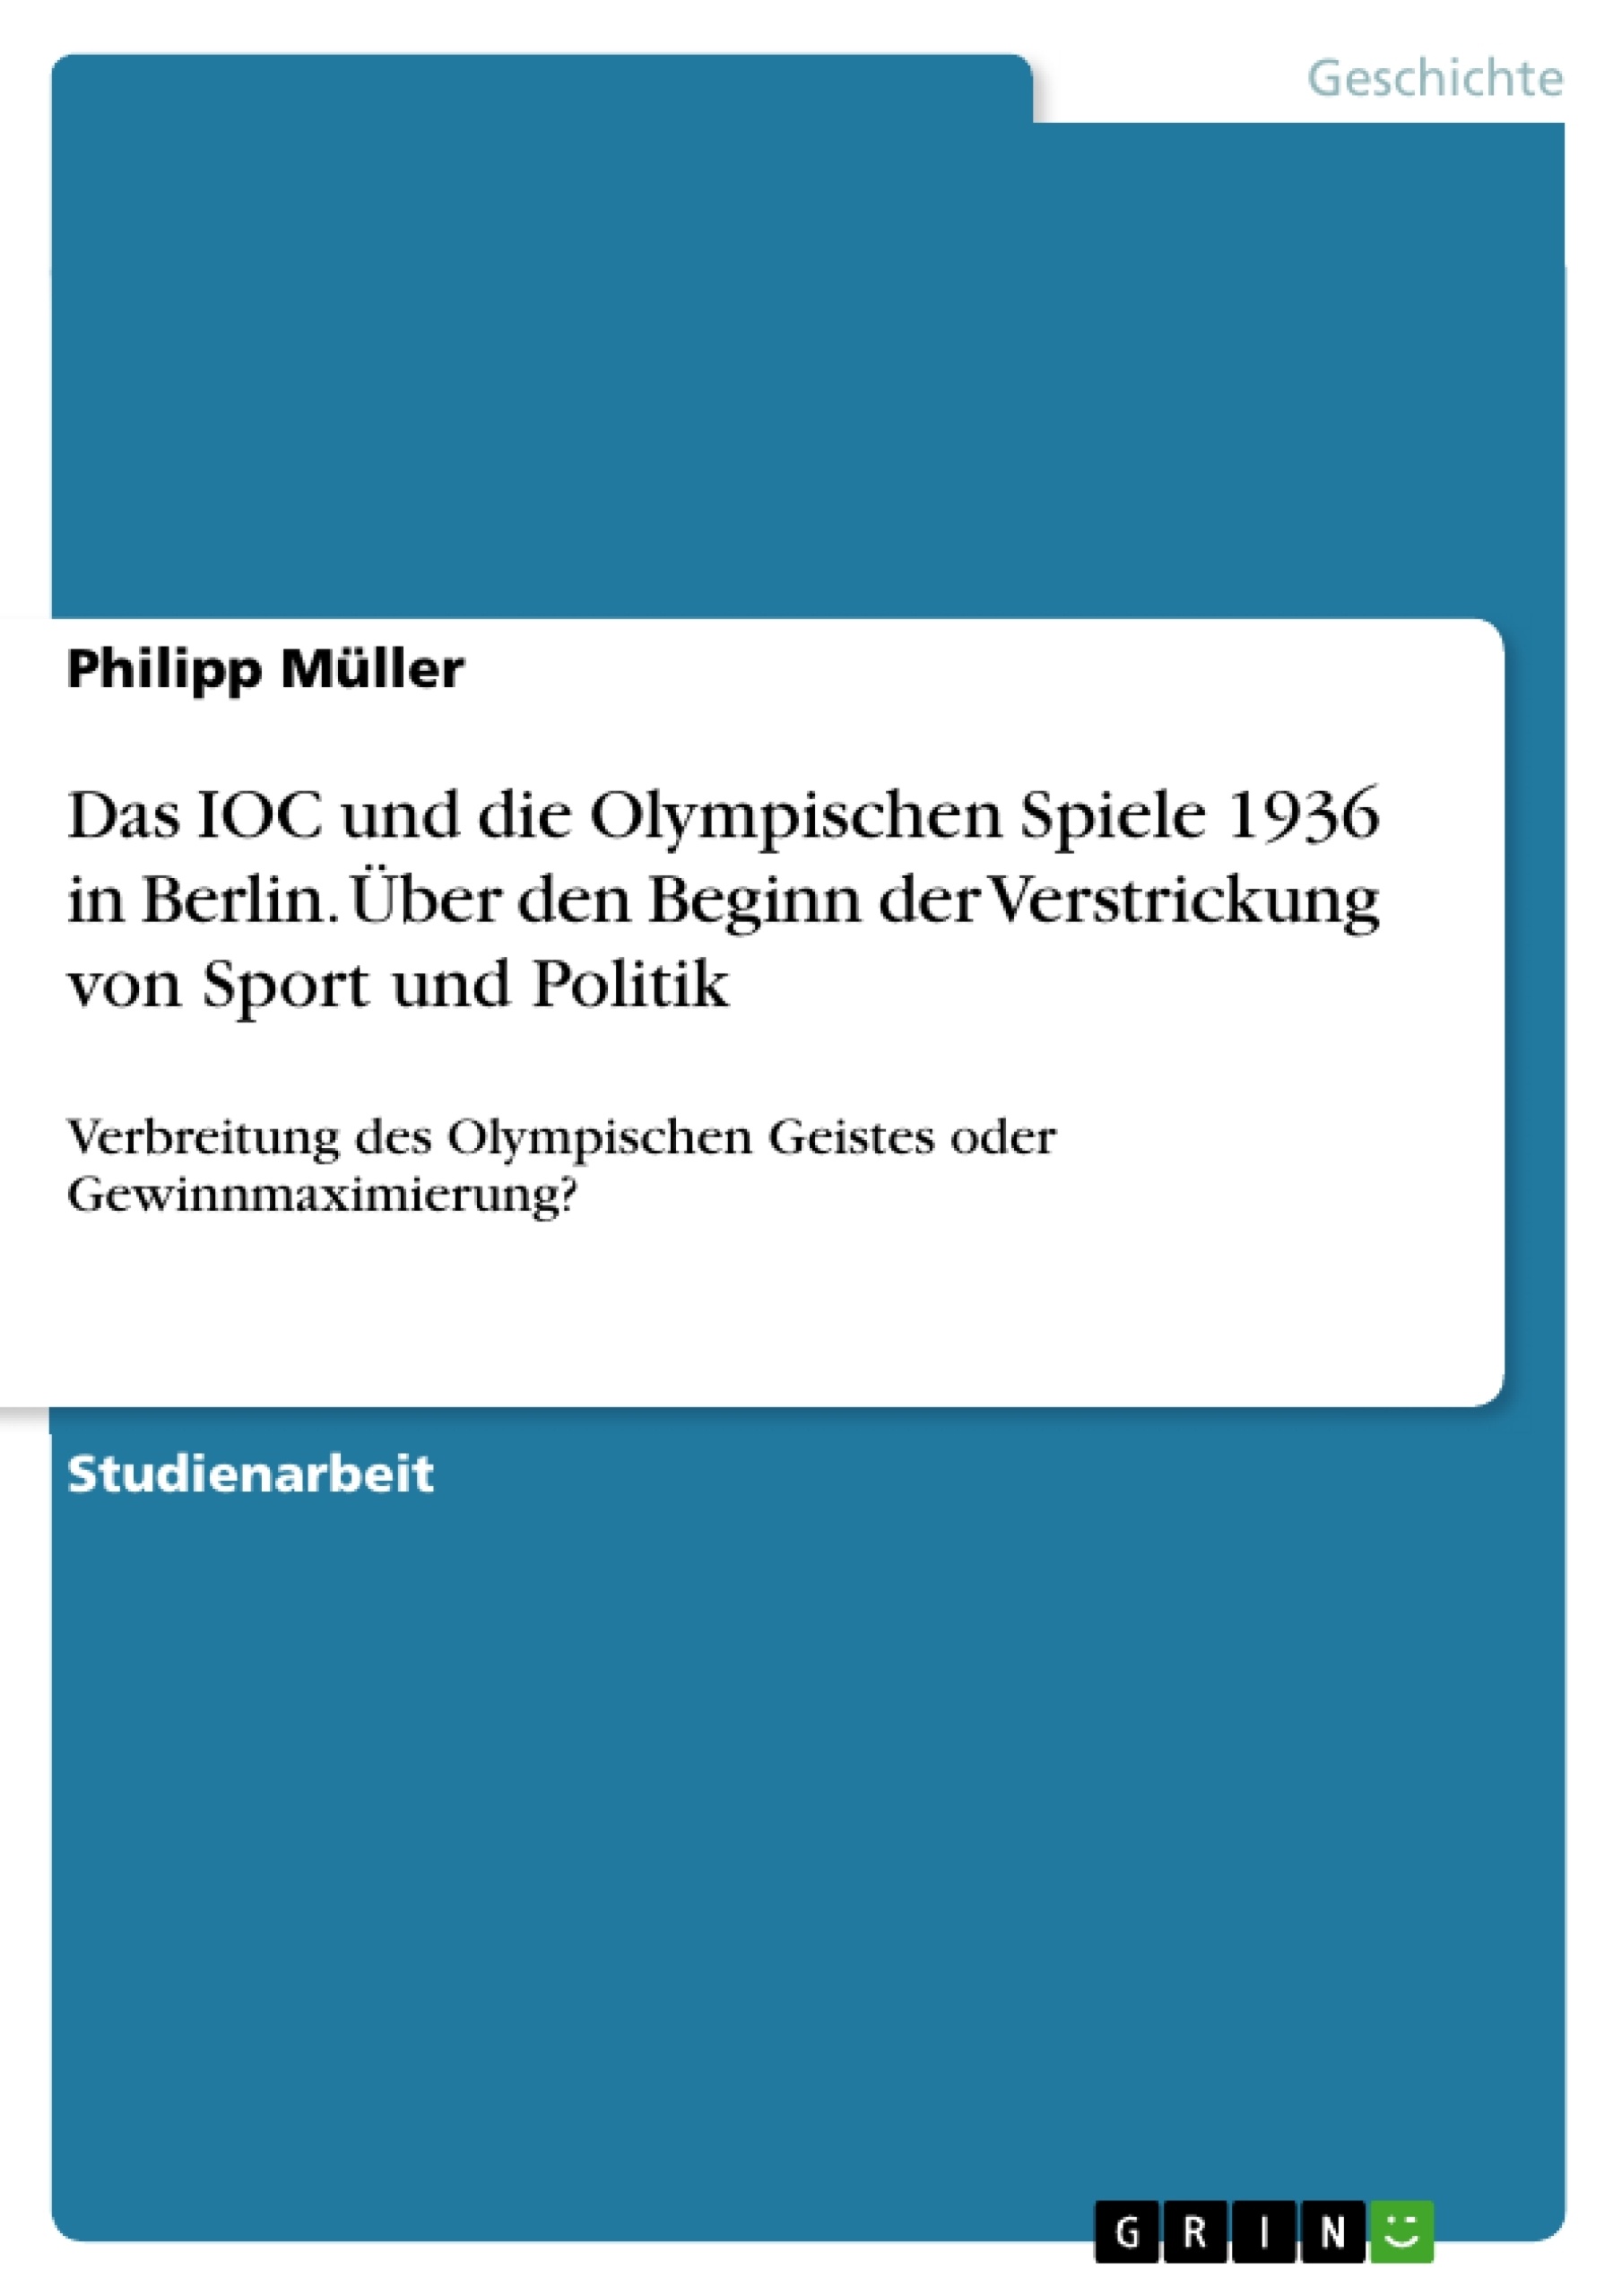 Título: Das IOC und die Olympischen Spiele 1936 in Berlin. Über den Beginn der Verstrickung von Sport und Politik